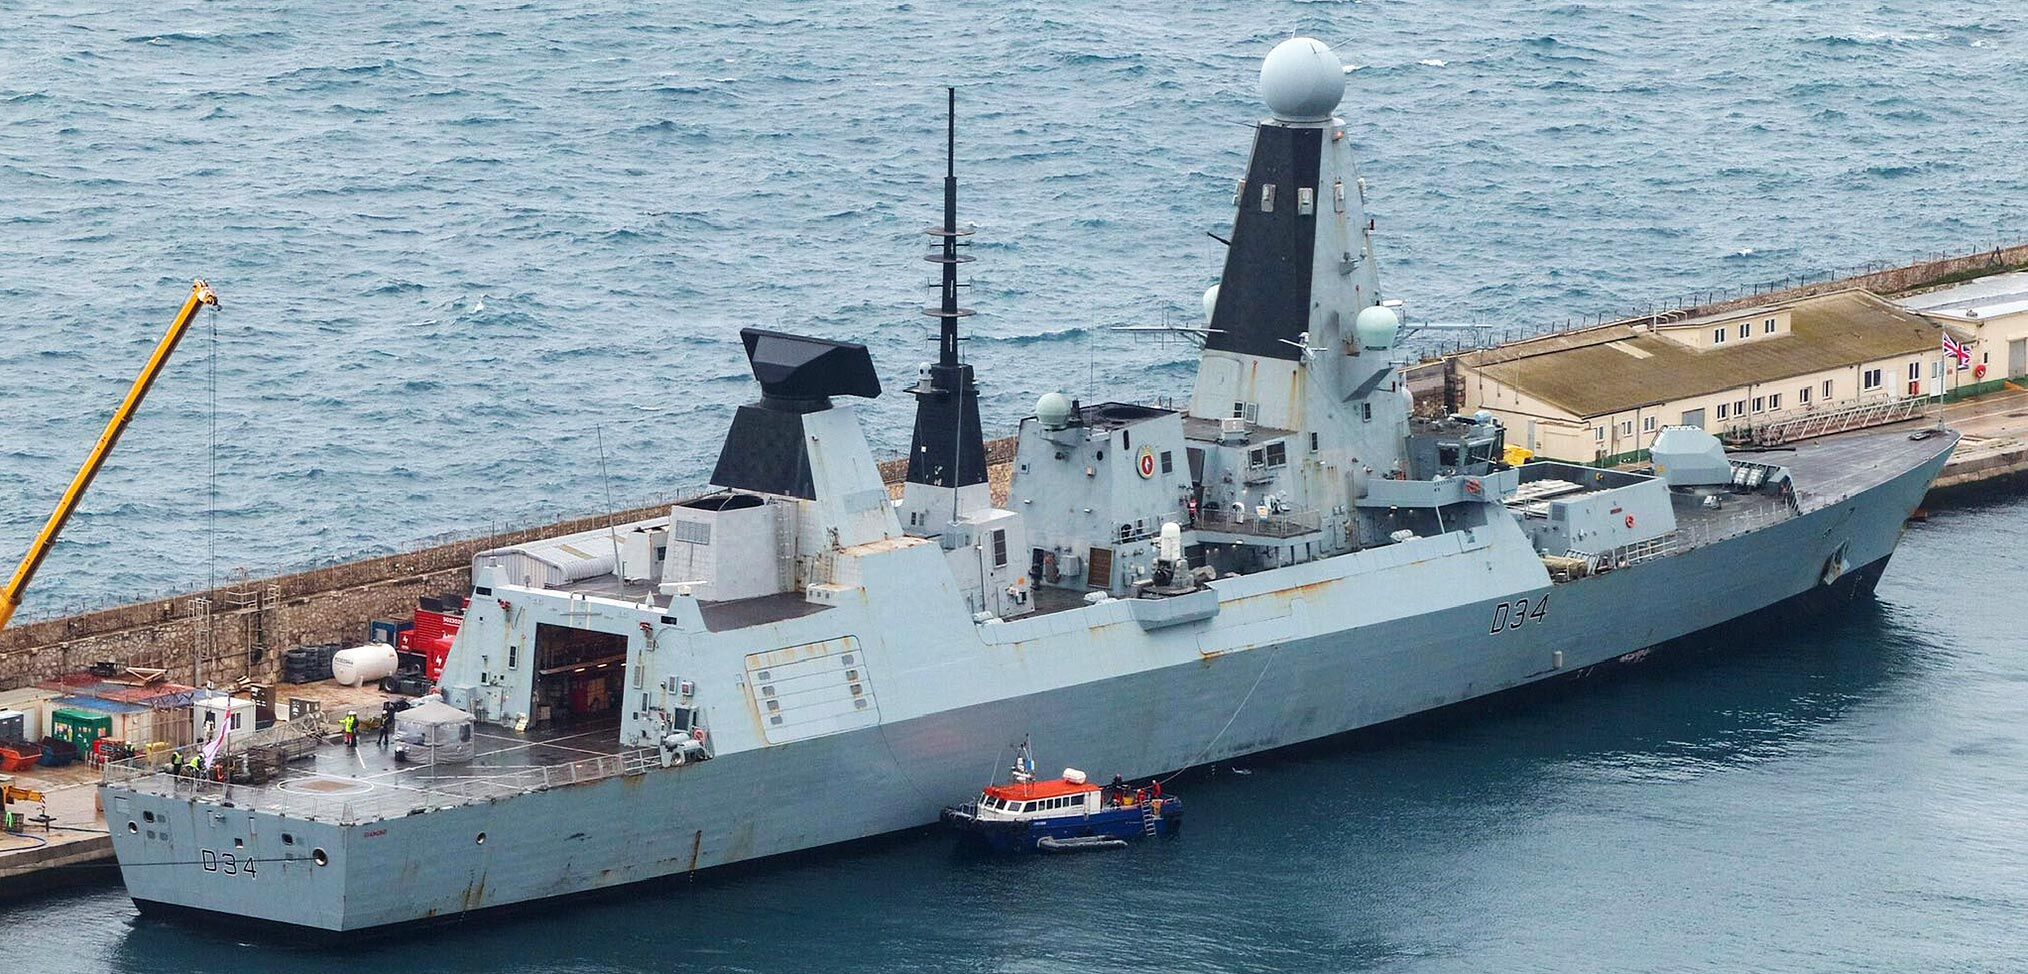 HMS Diamond prepares to return to the Red Sea